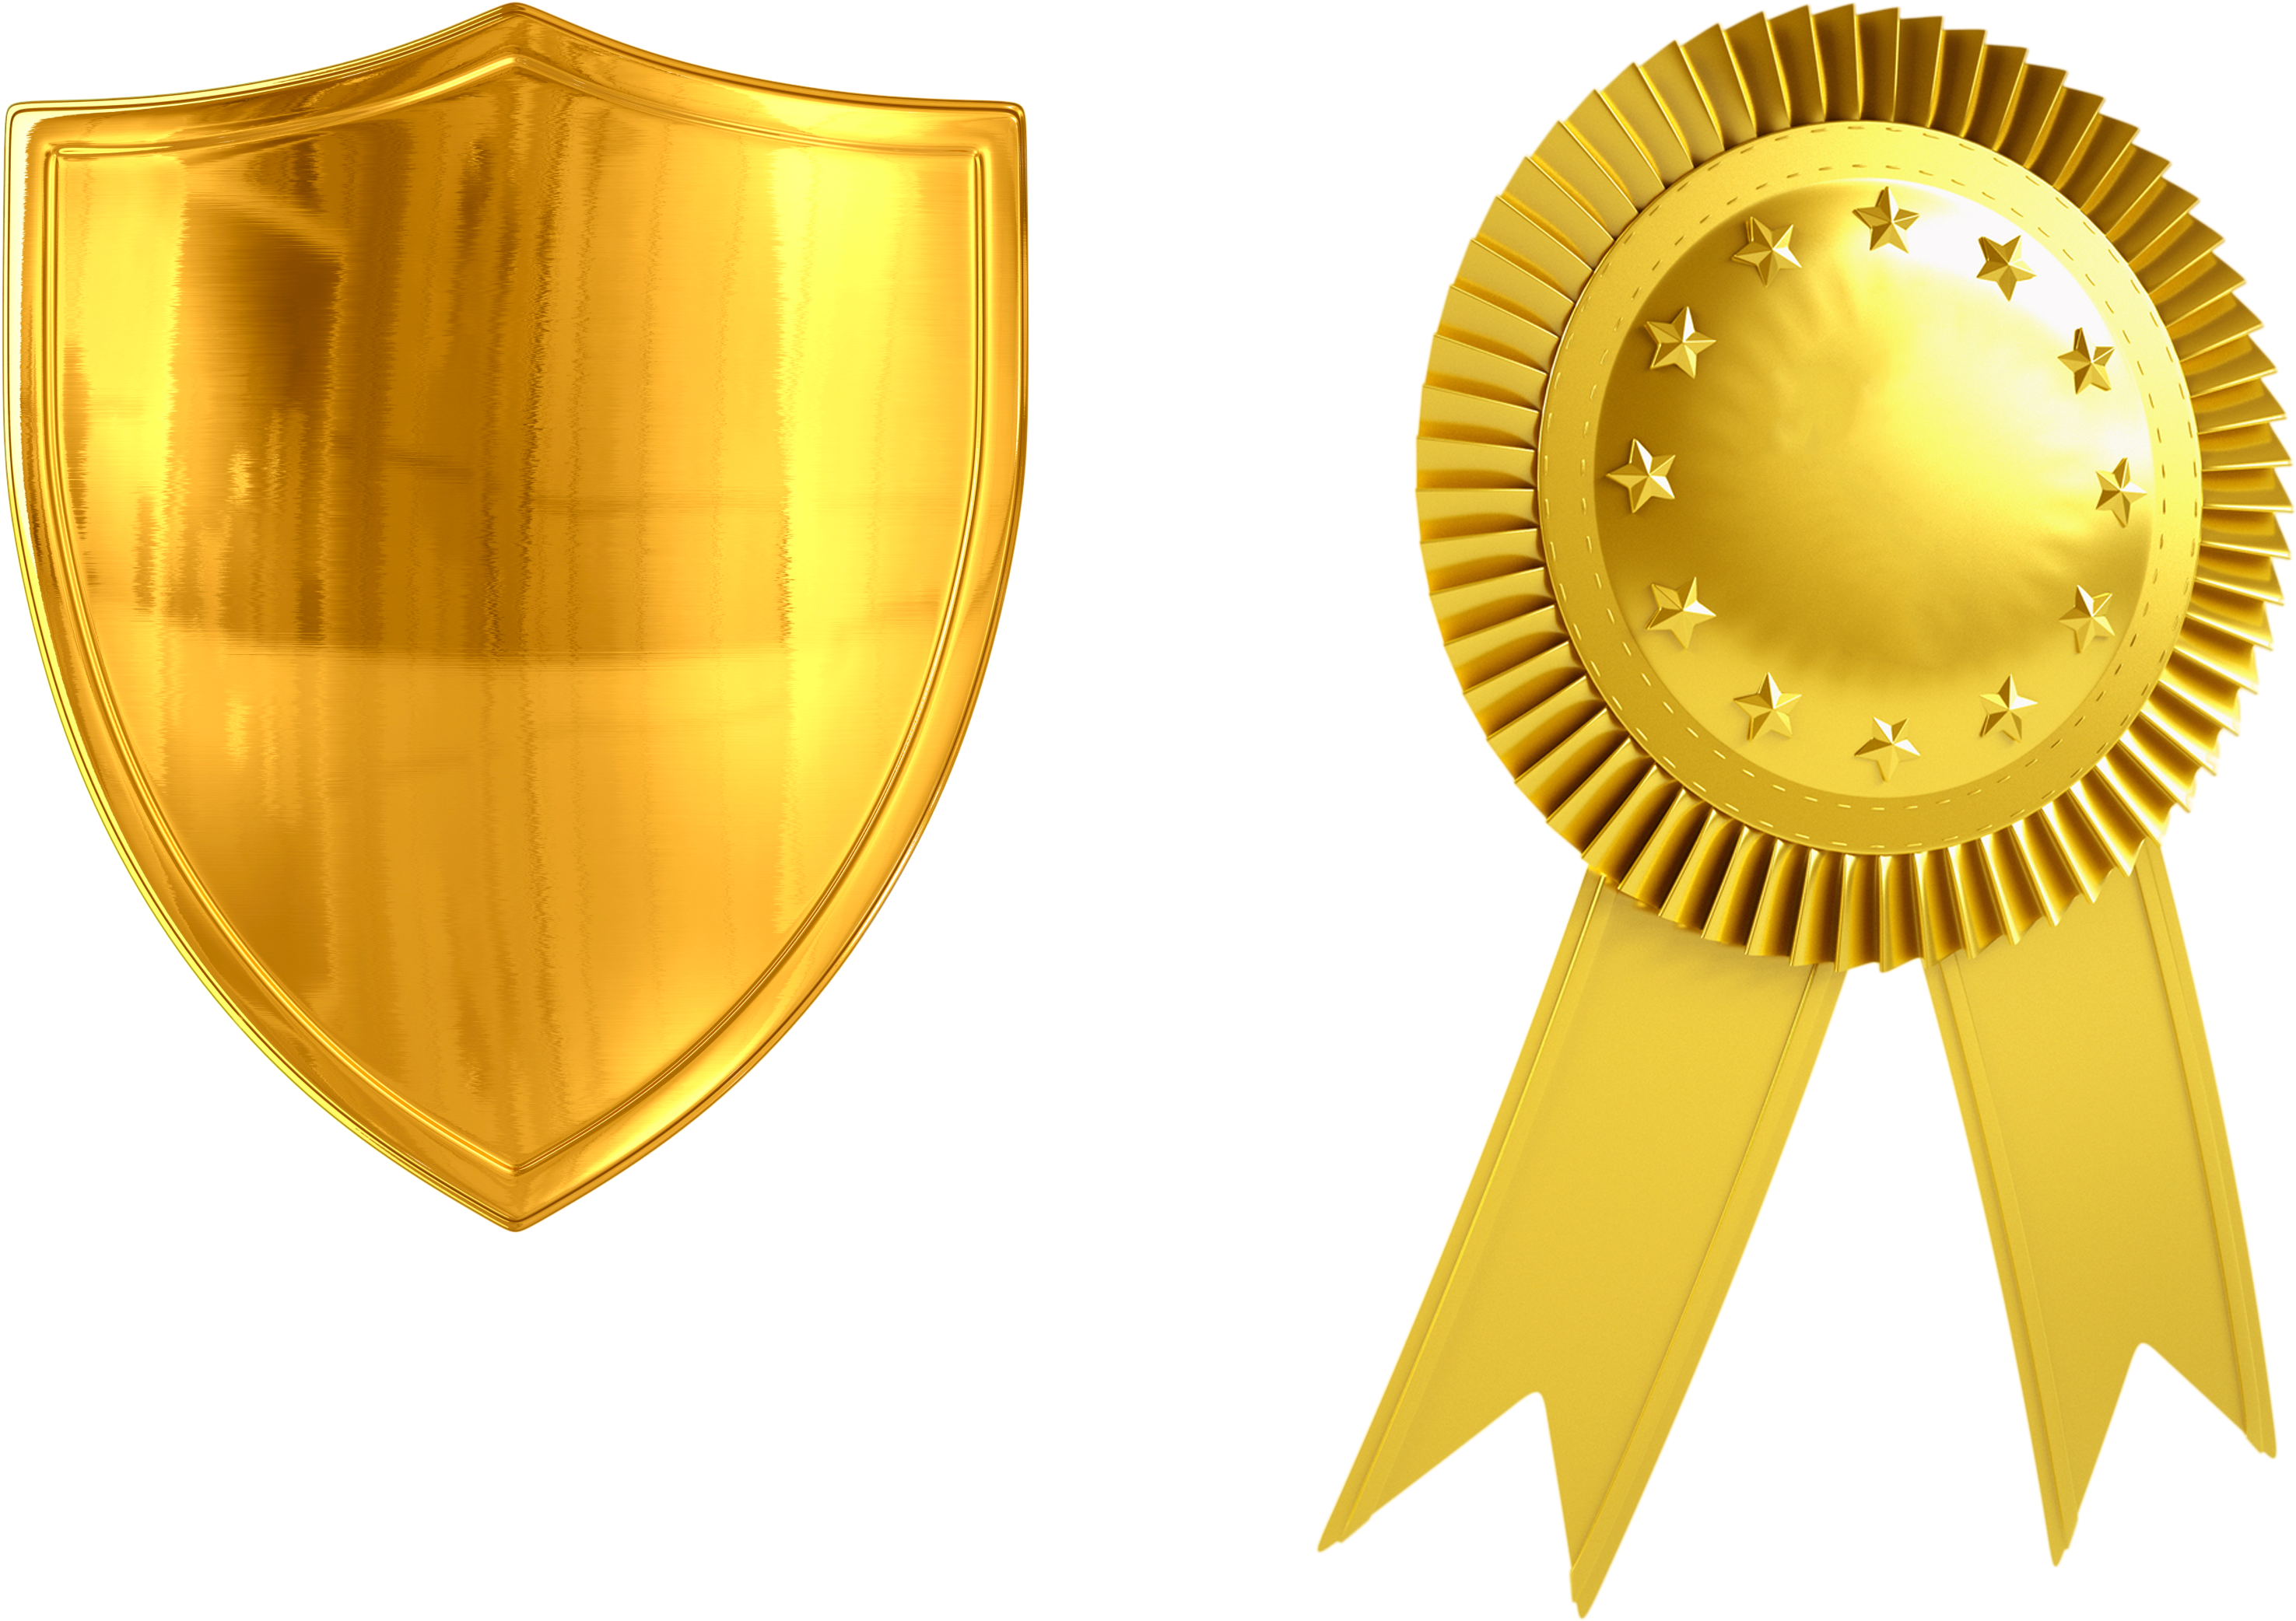 Gold Medal Bronze Medal - Golden Shield (3447x2301)